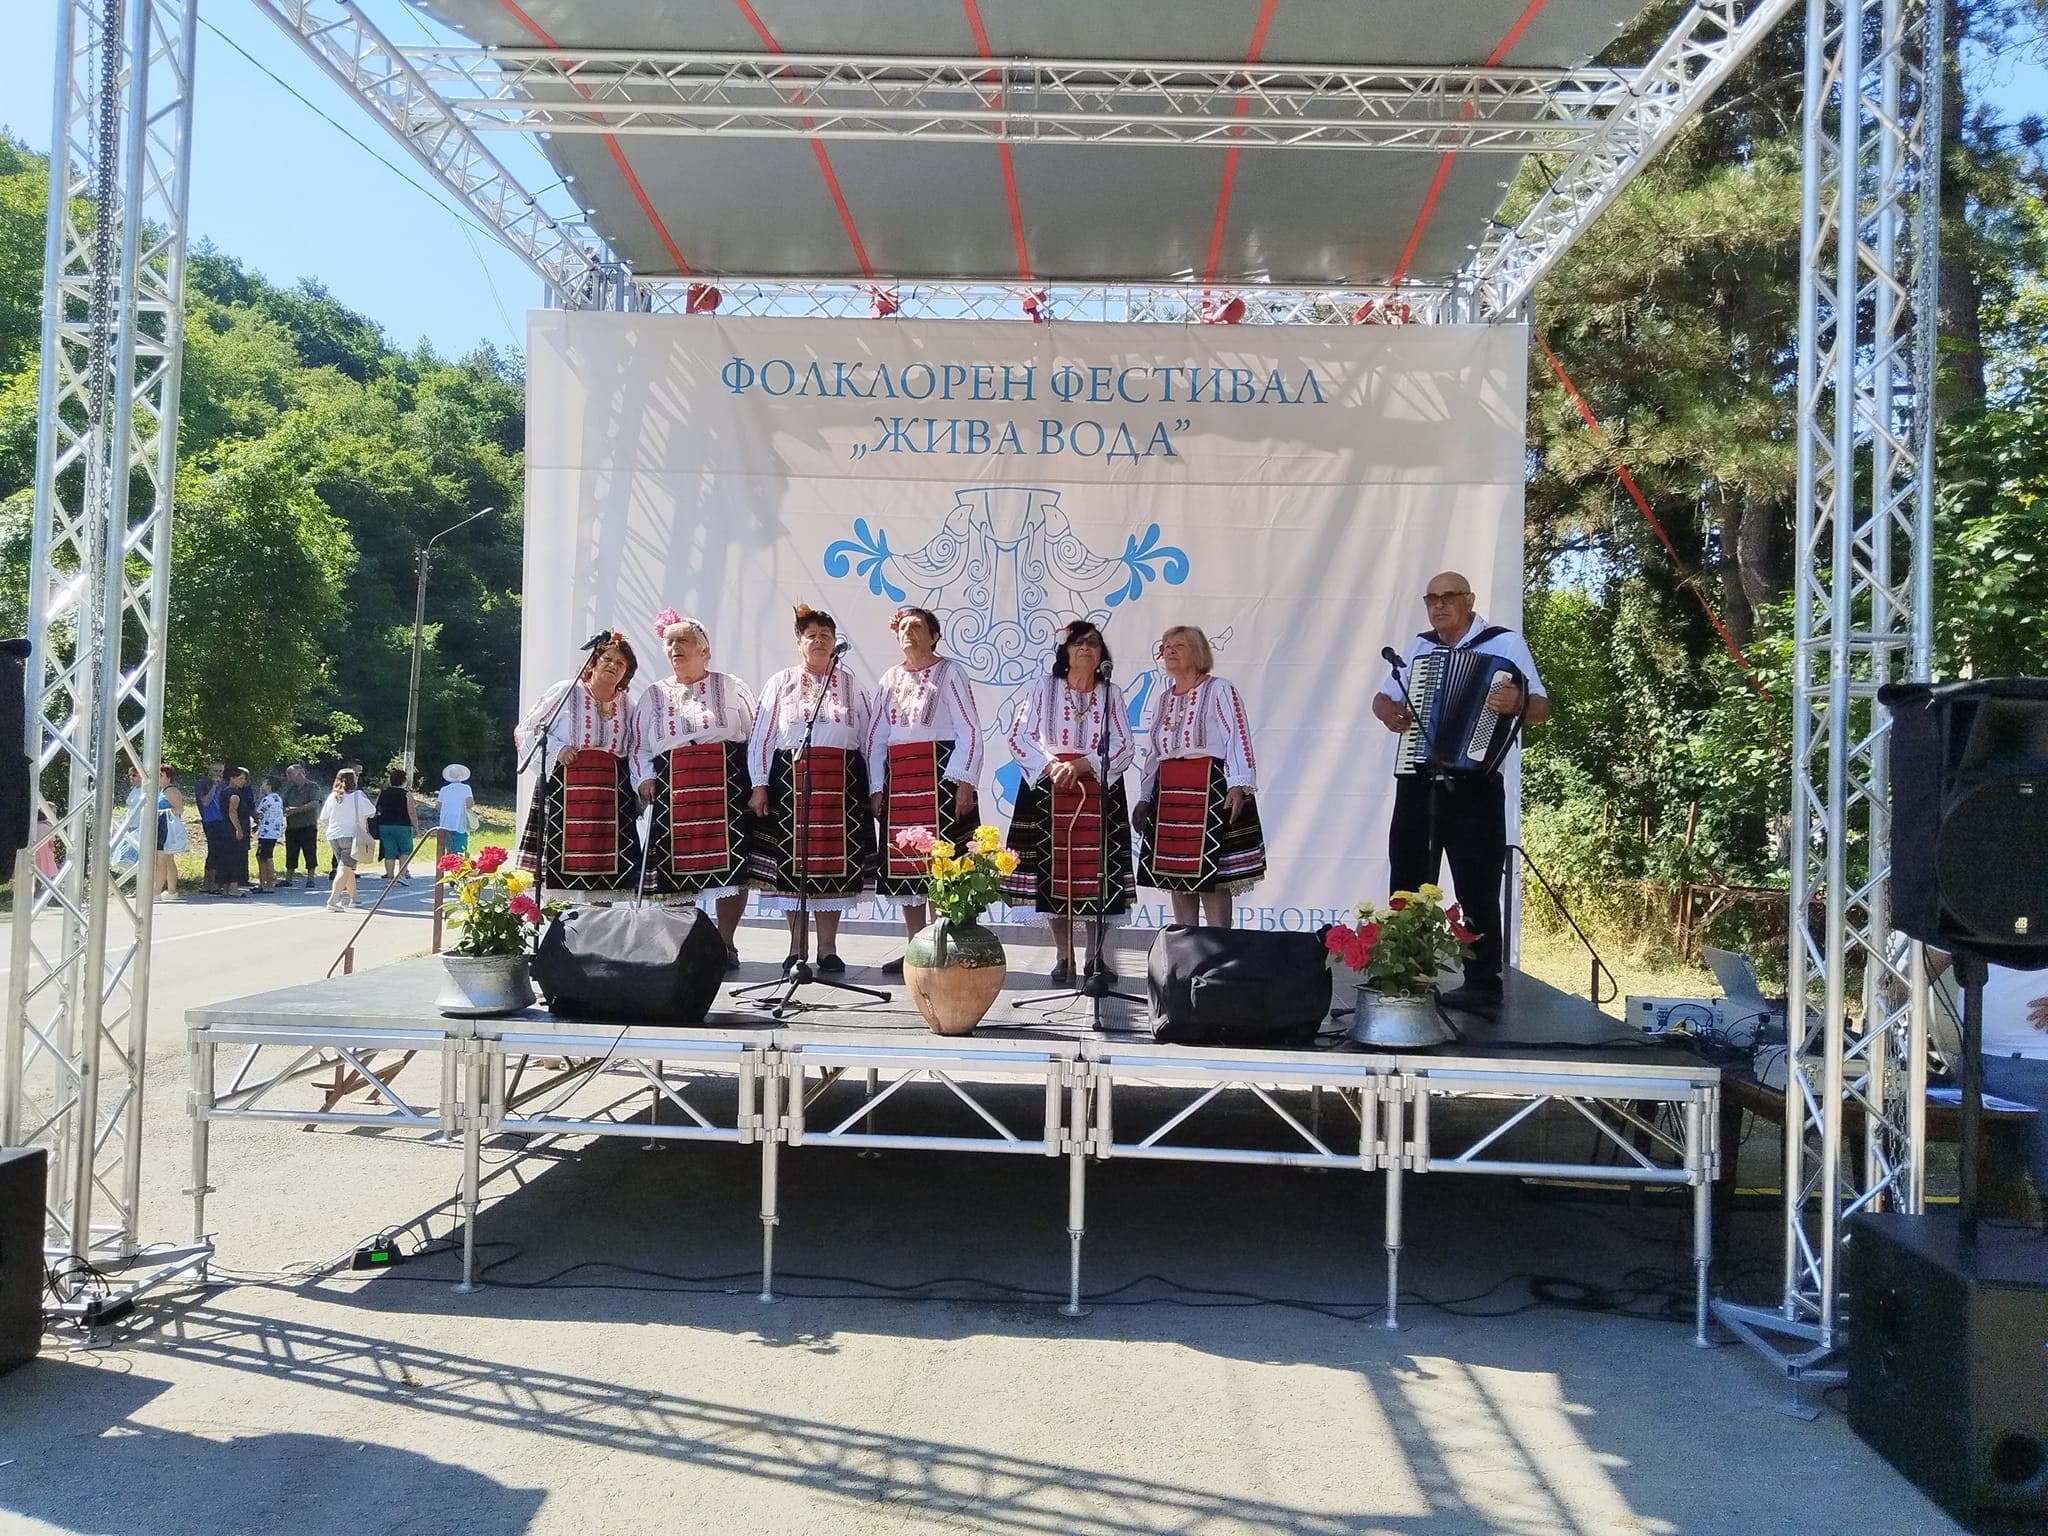 Фолклорният събор „Жива вода“ отново събра стотици хора
 от цялата страна в Каран Върбовка
